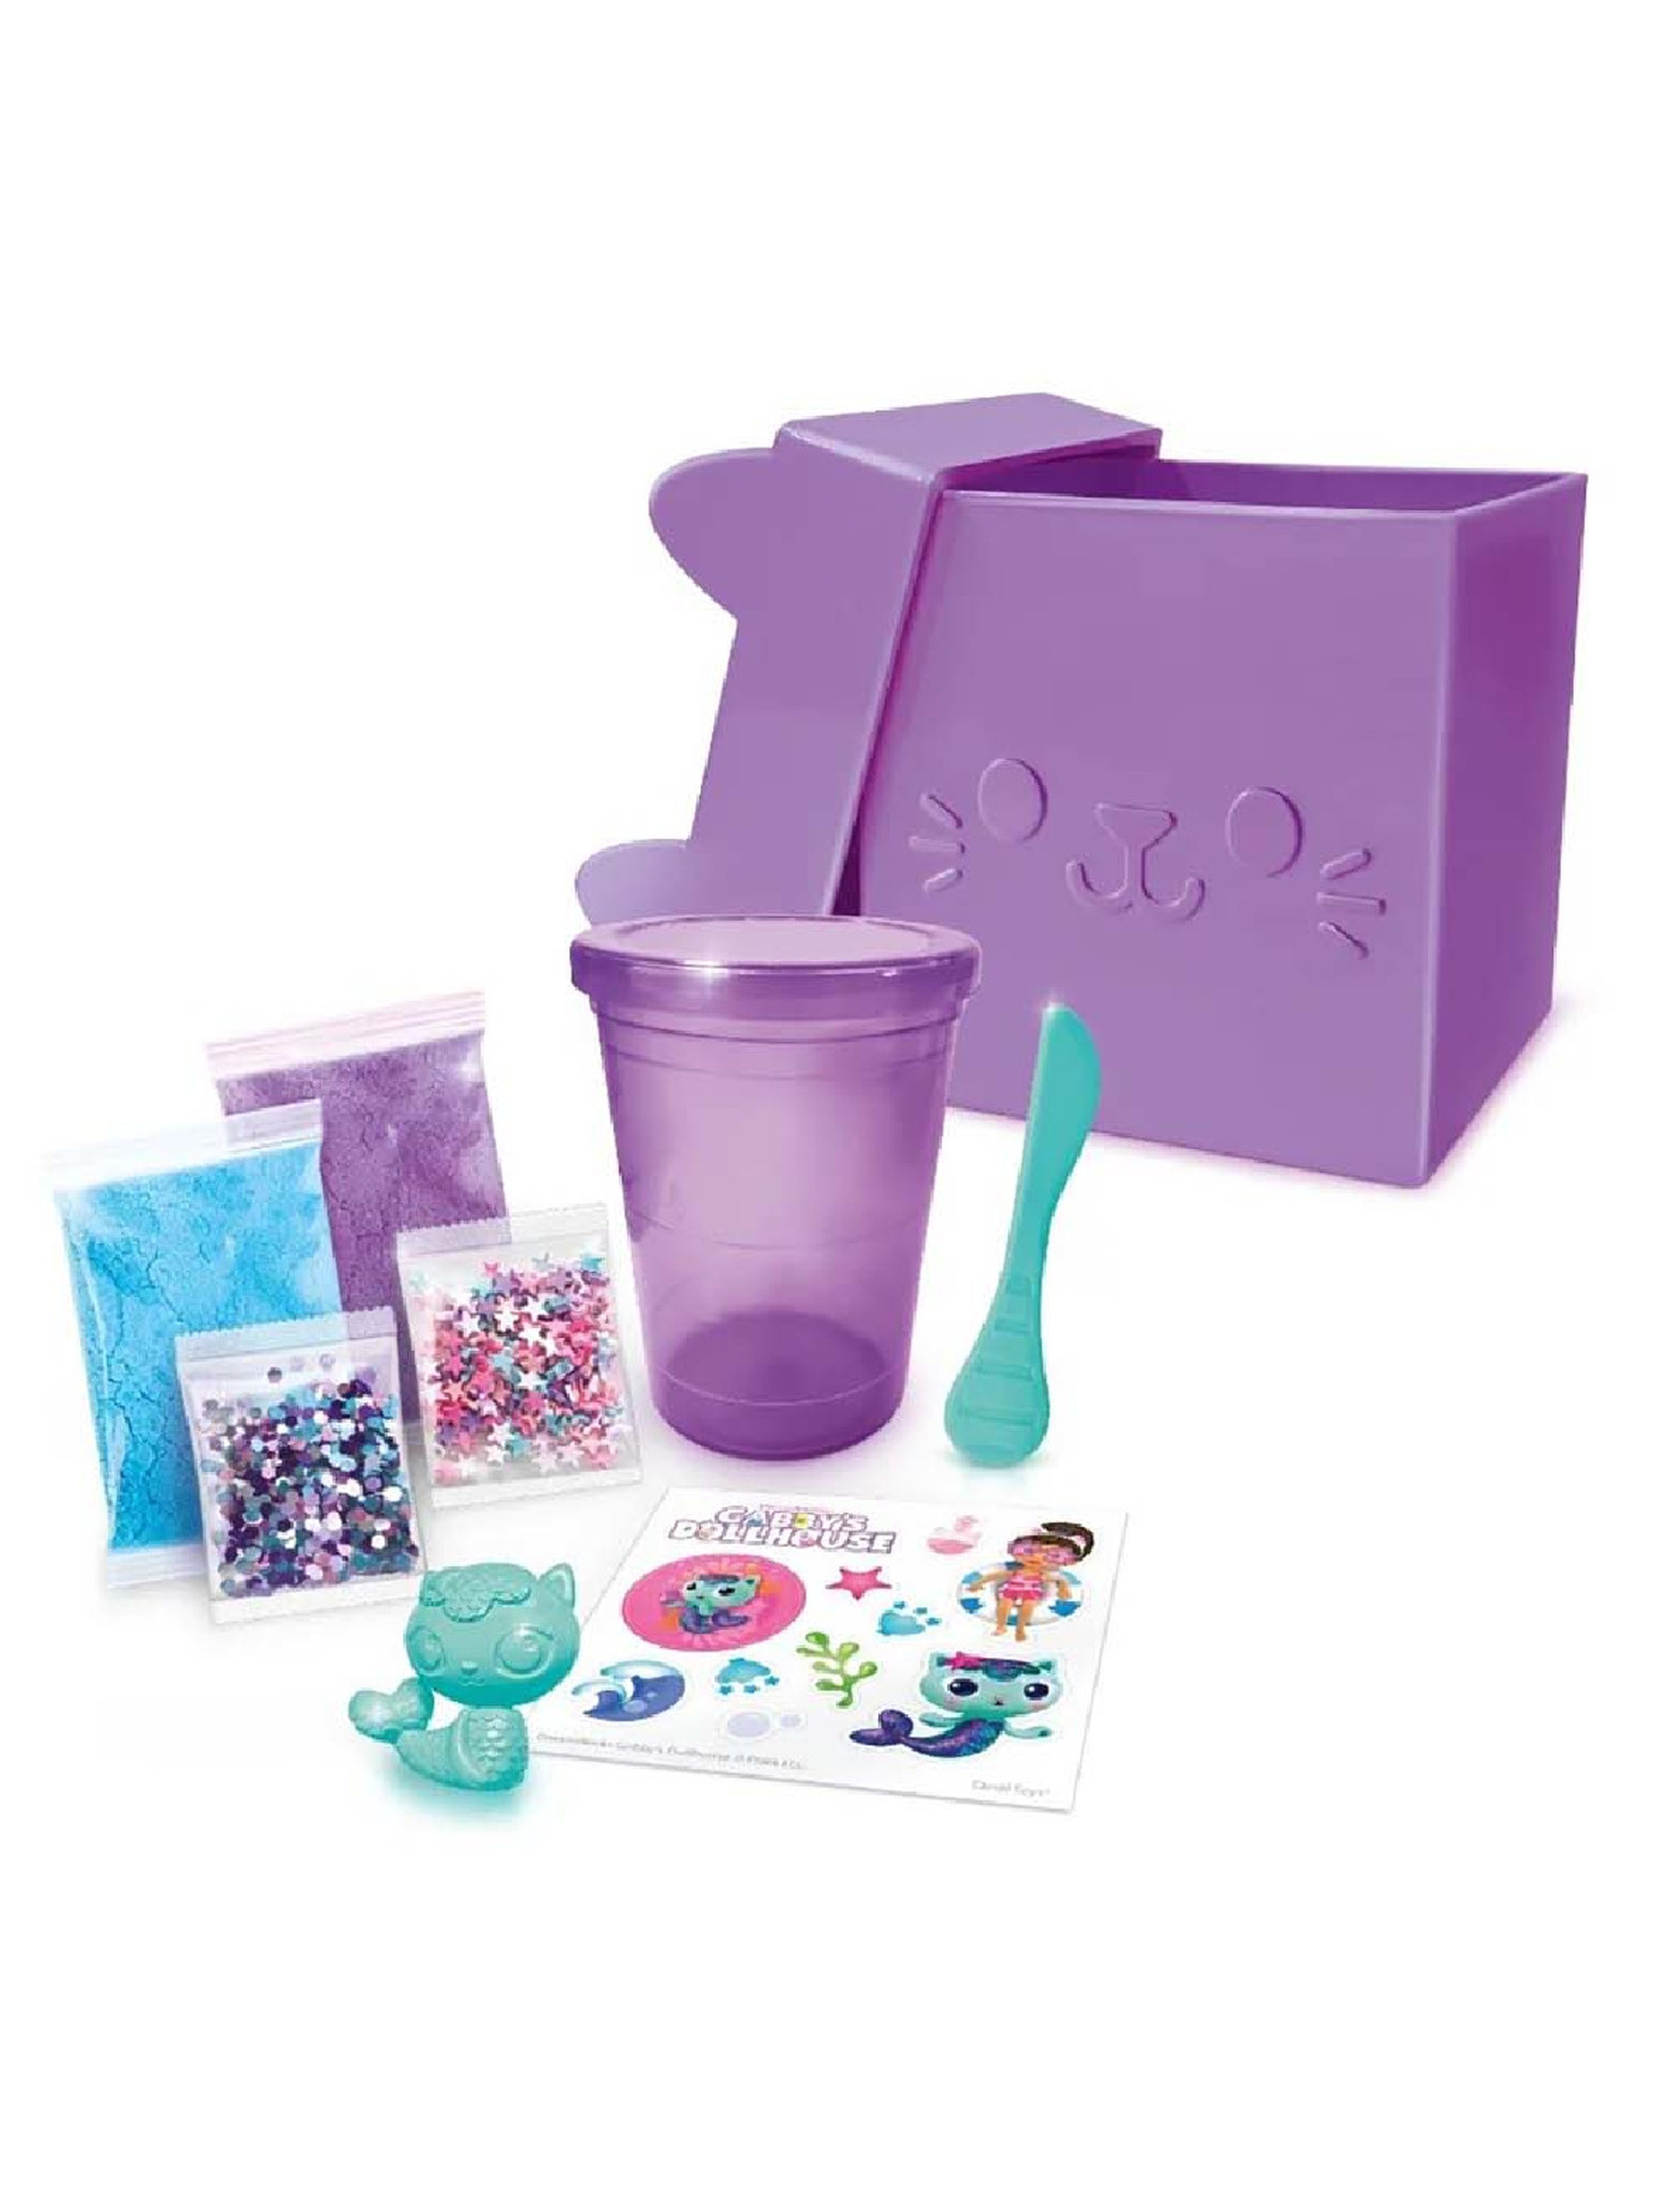 Masa plastyczna Koci Domek Gabi - Kocie pudełko z niespodzianką fioletowe- slime